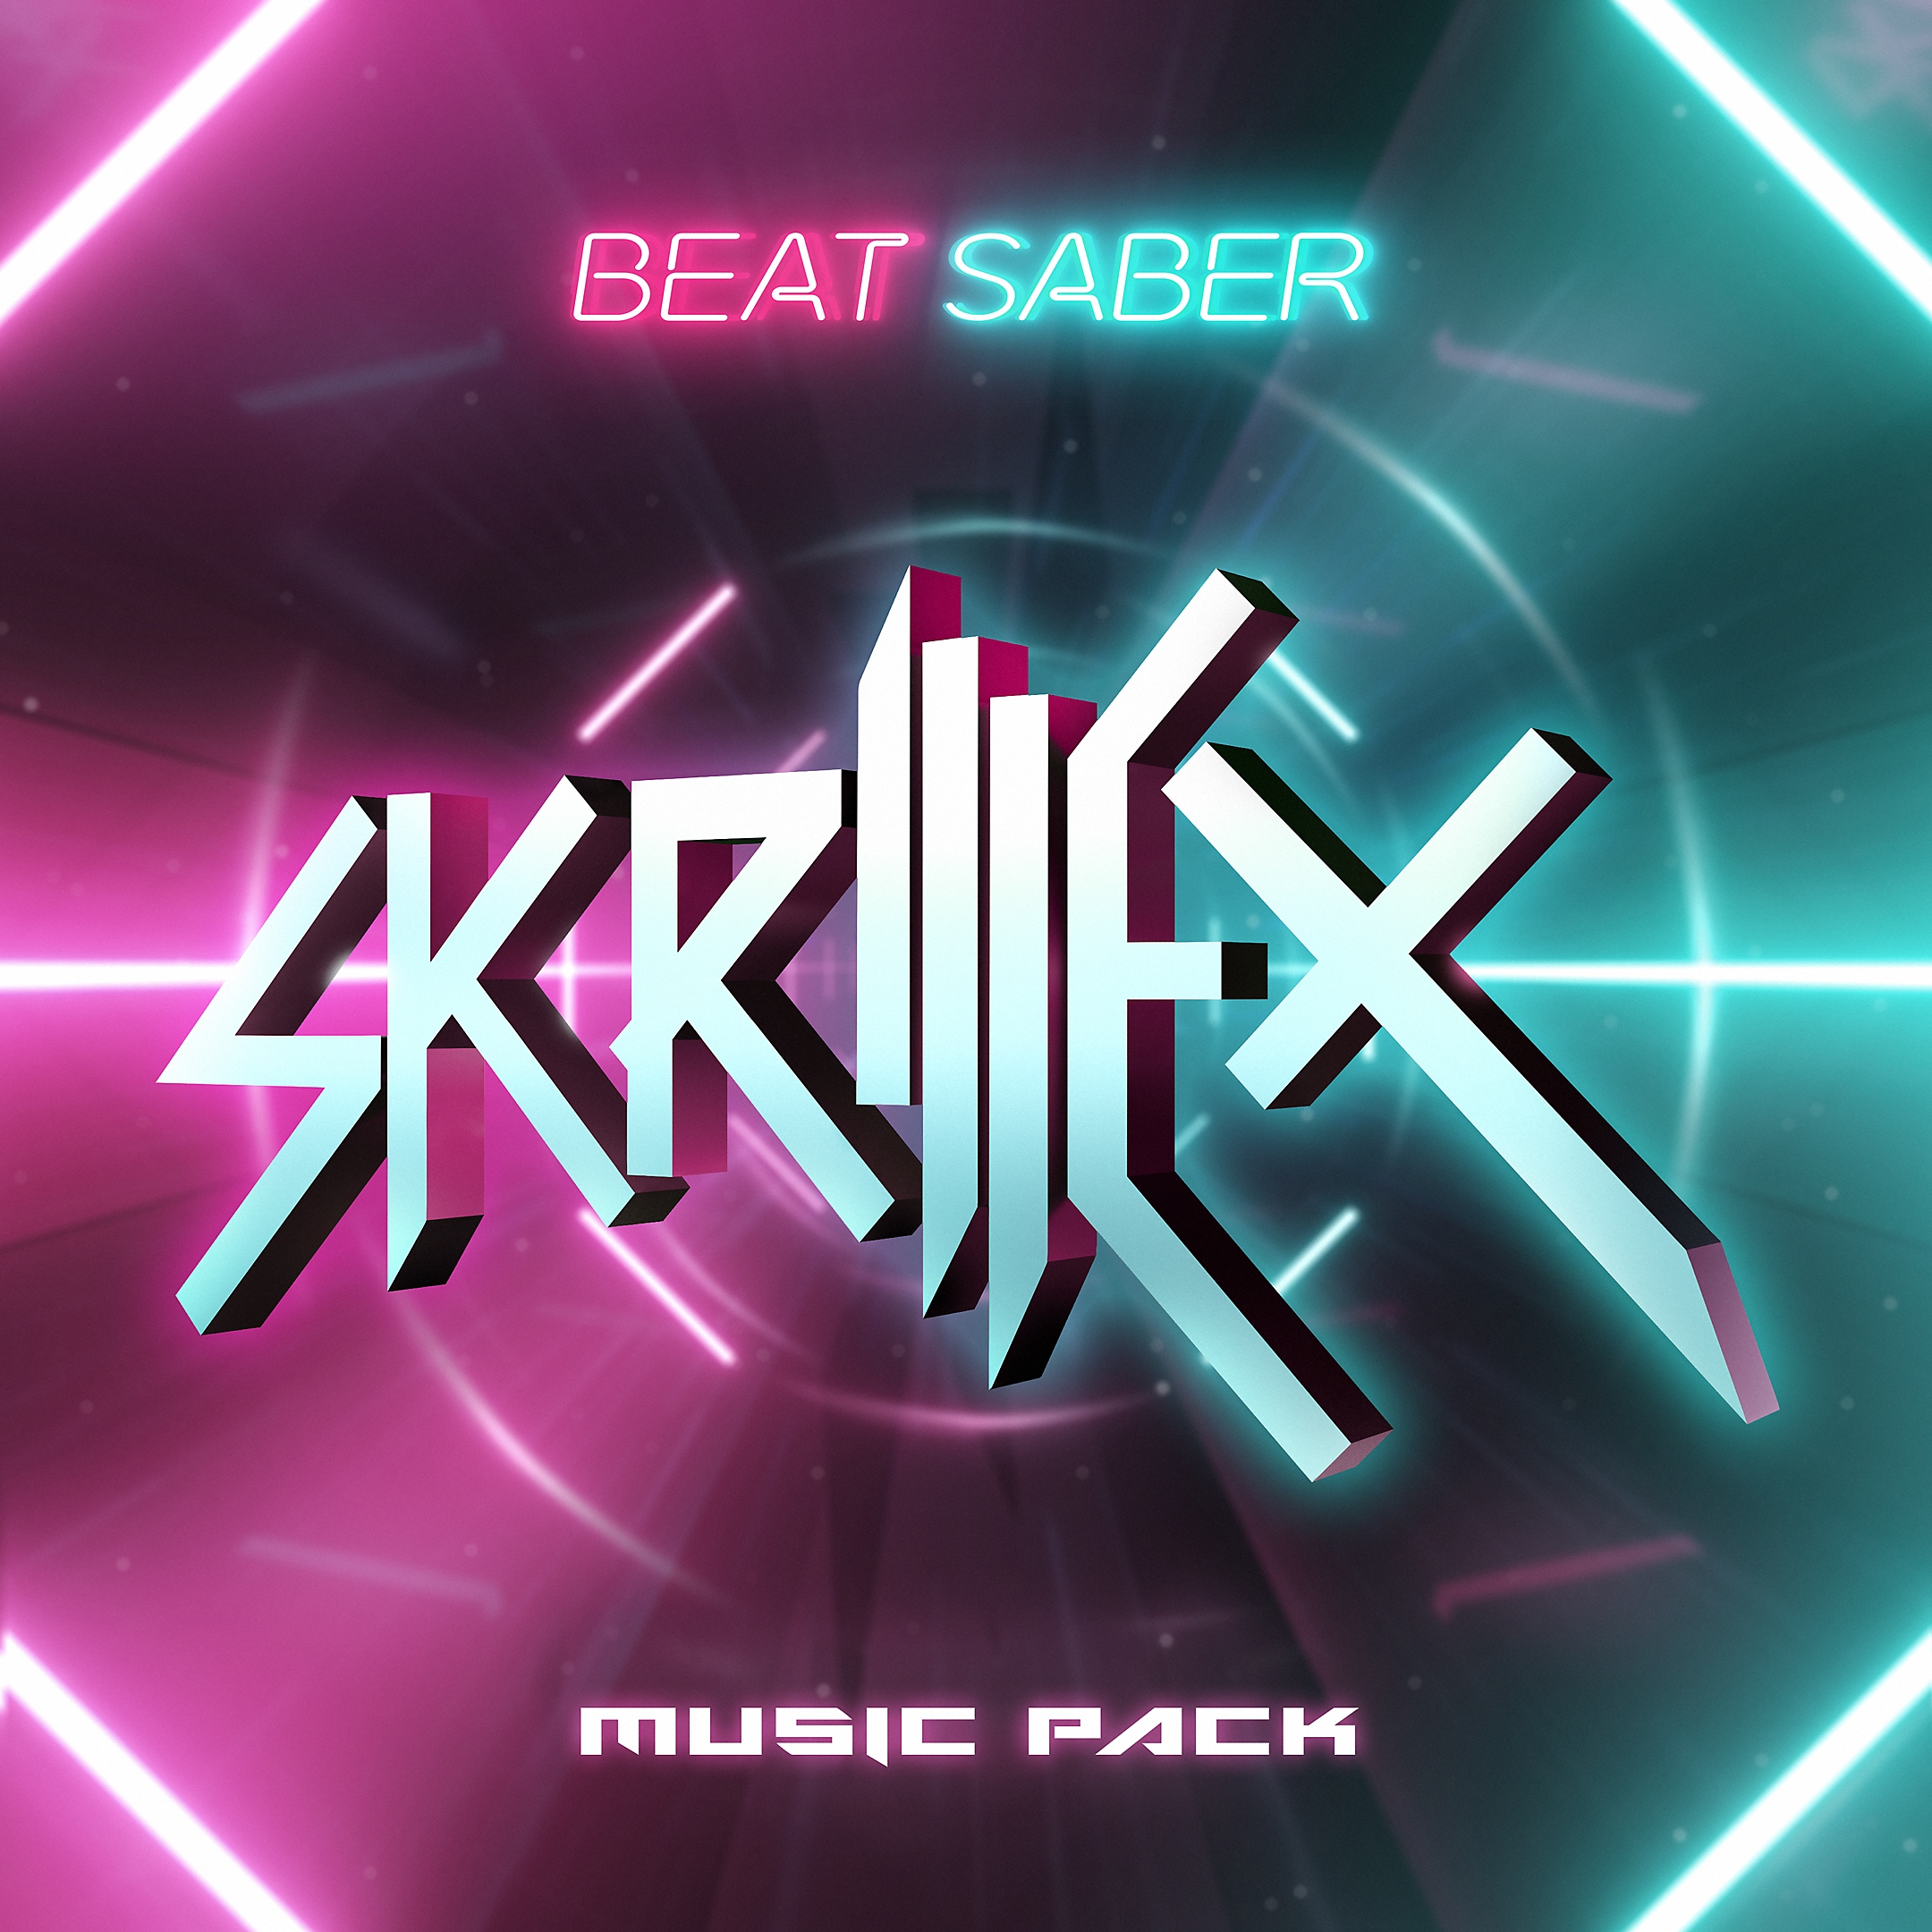 Pack de música de Beat Saber de Skrillex